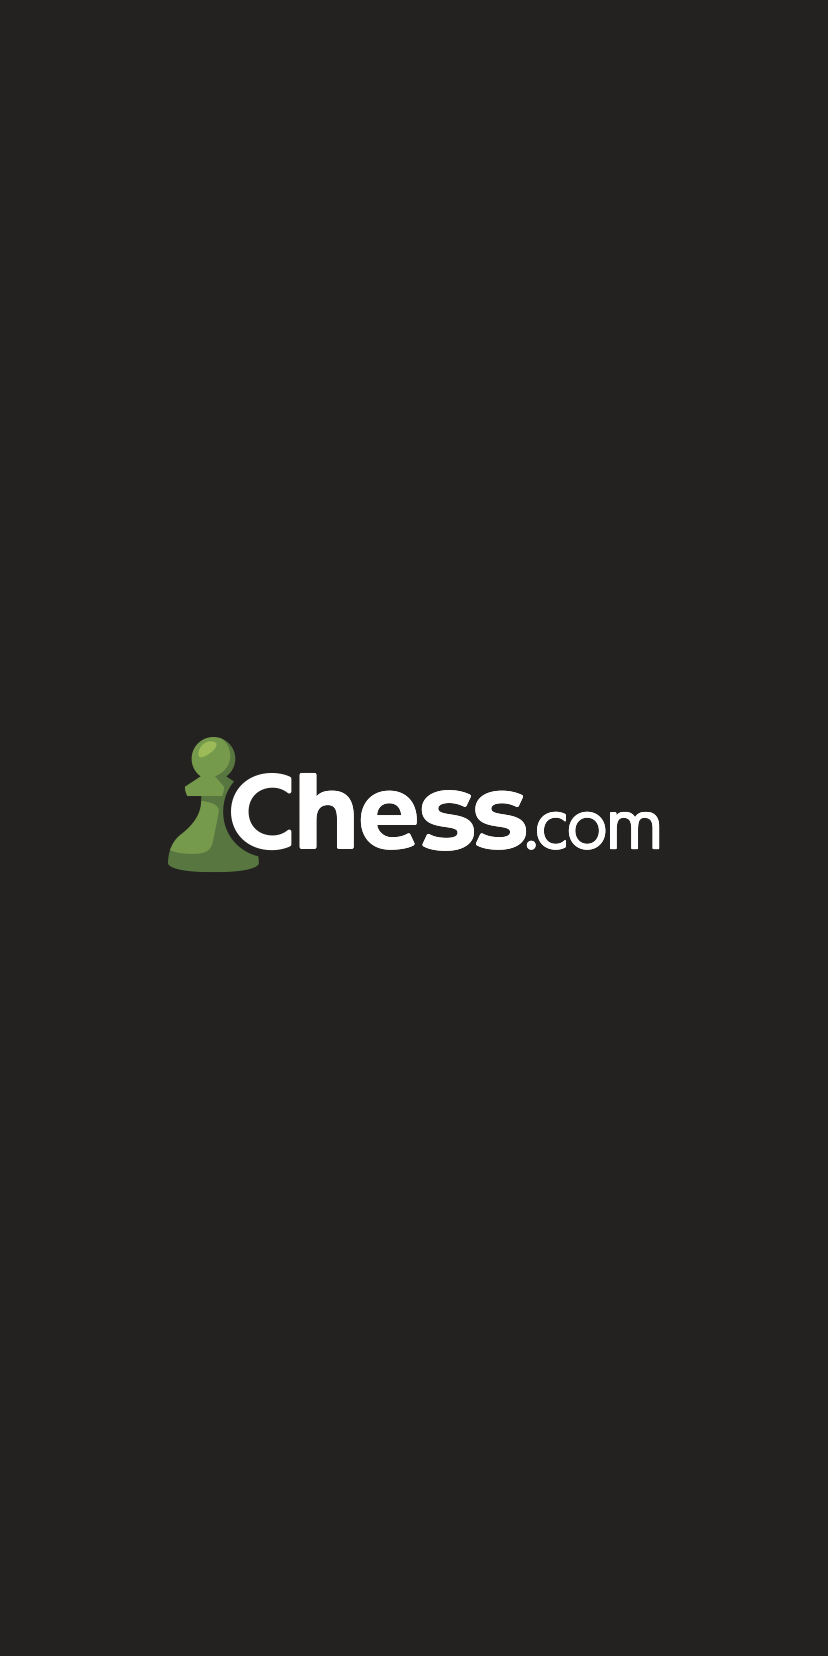 chesscom startup